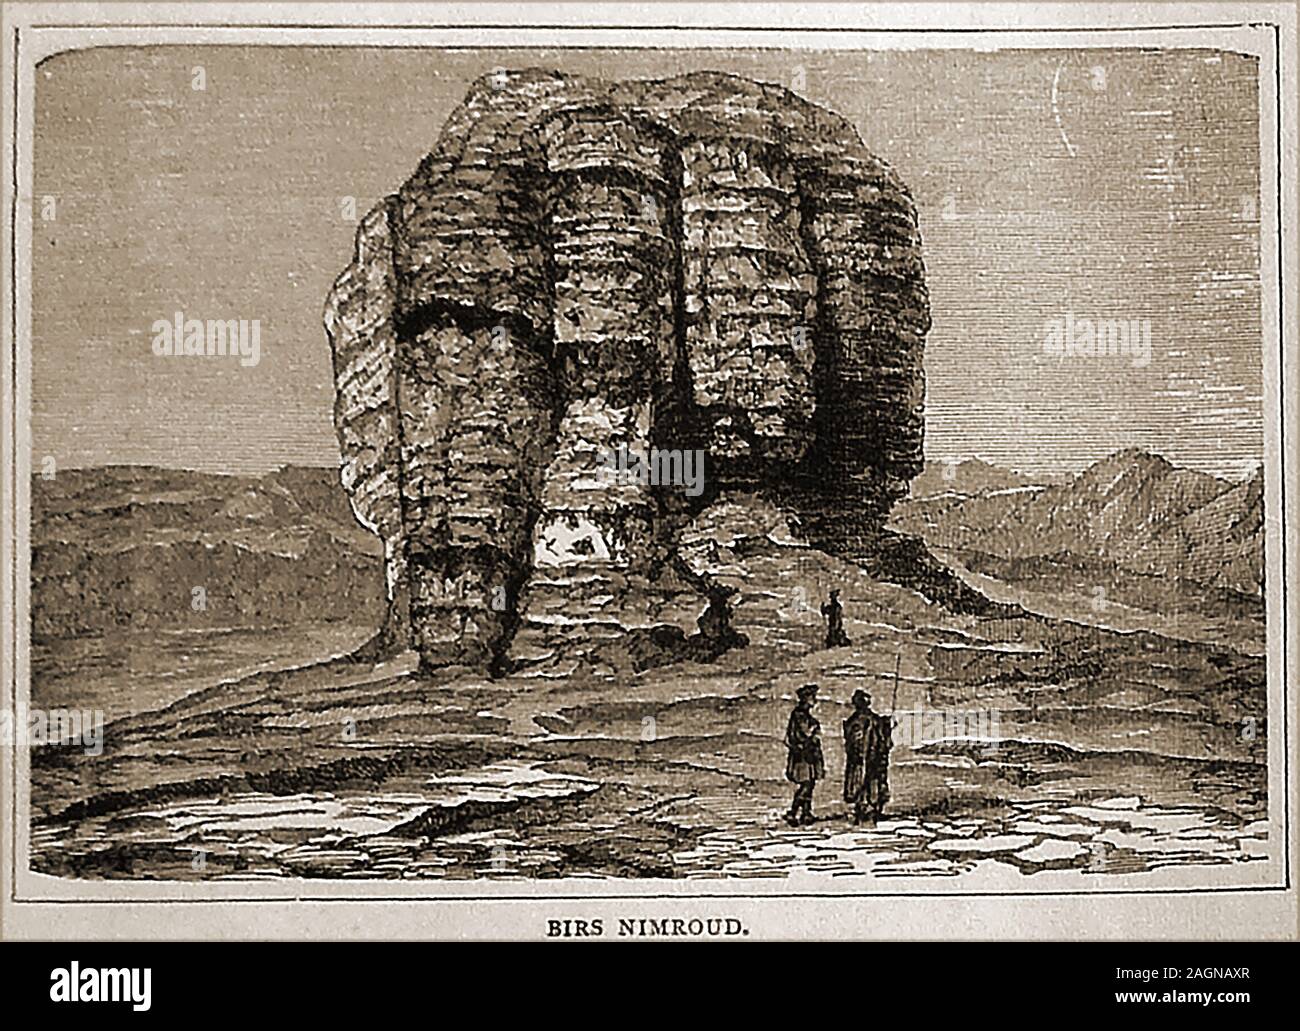 Das 19. Jahrhundert Gravur der Birs Nimroud aka Borsippa, Barsip, Til-Barsip und Birs Nimrud), von dem angenommen wird, dass es an der Zeit die wahre bleibt der Turm von Babel. Dies unterscheidet sich in Form und Lage um die Bilder nun behauptet, der Turm von Babel. Stockfoto